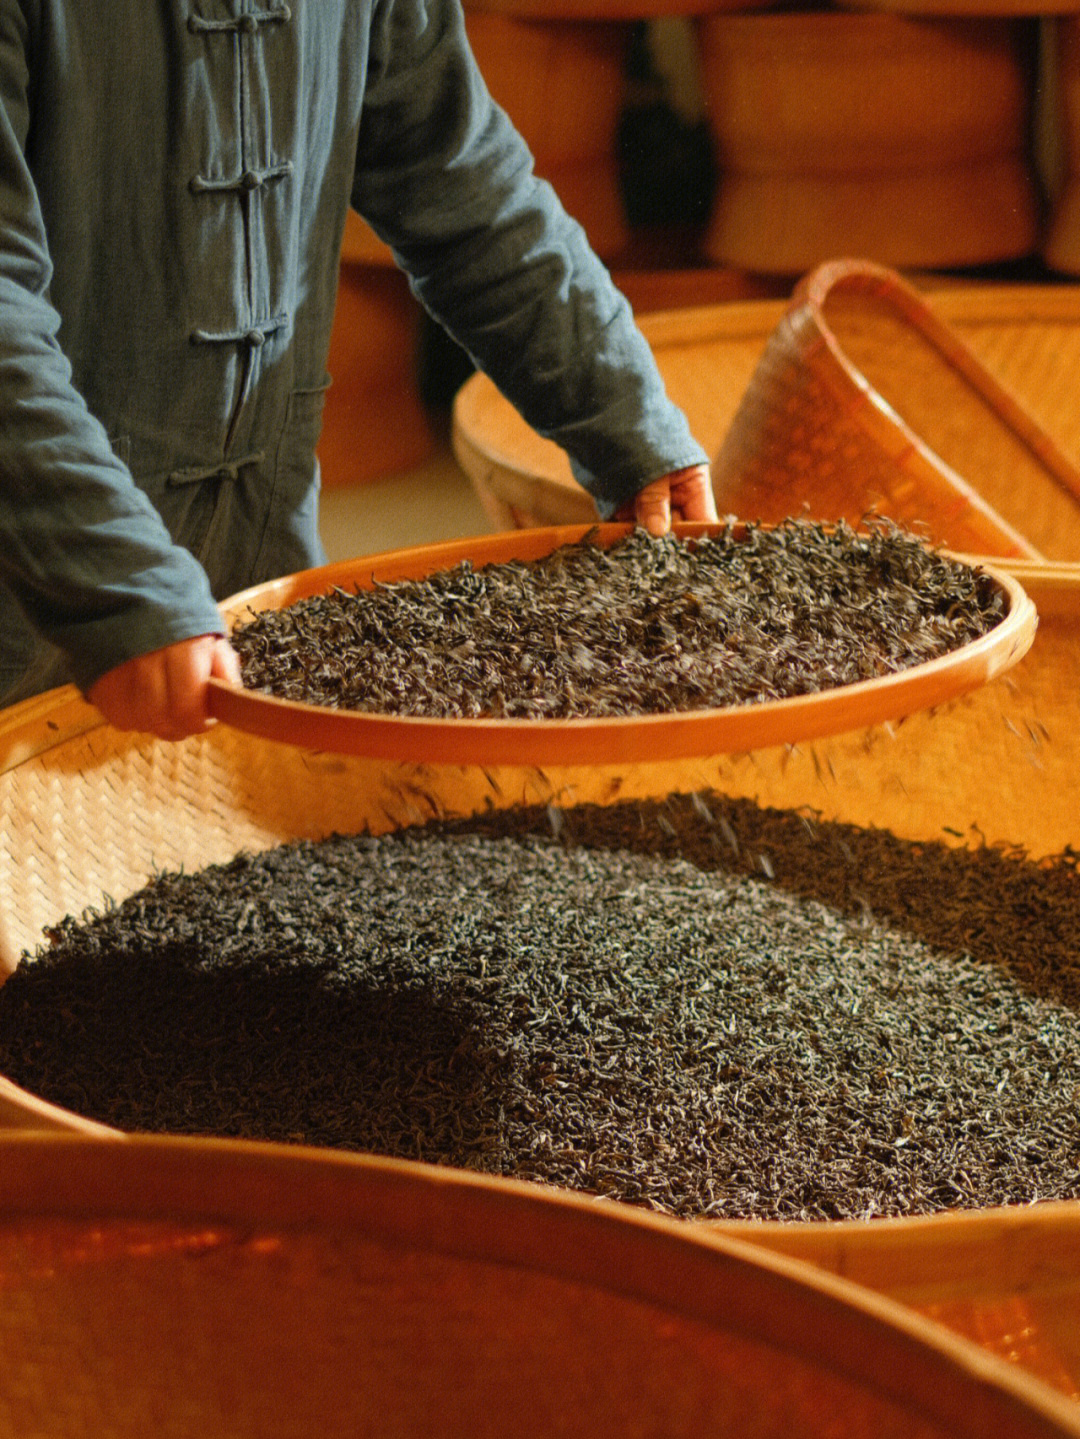 岩茶的制作工艺流程图片